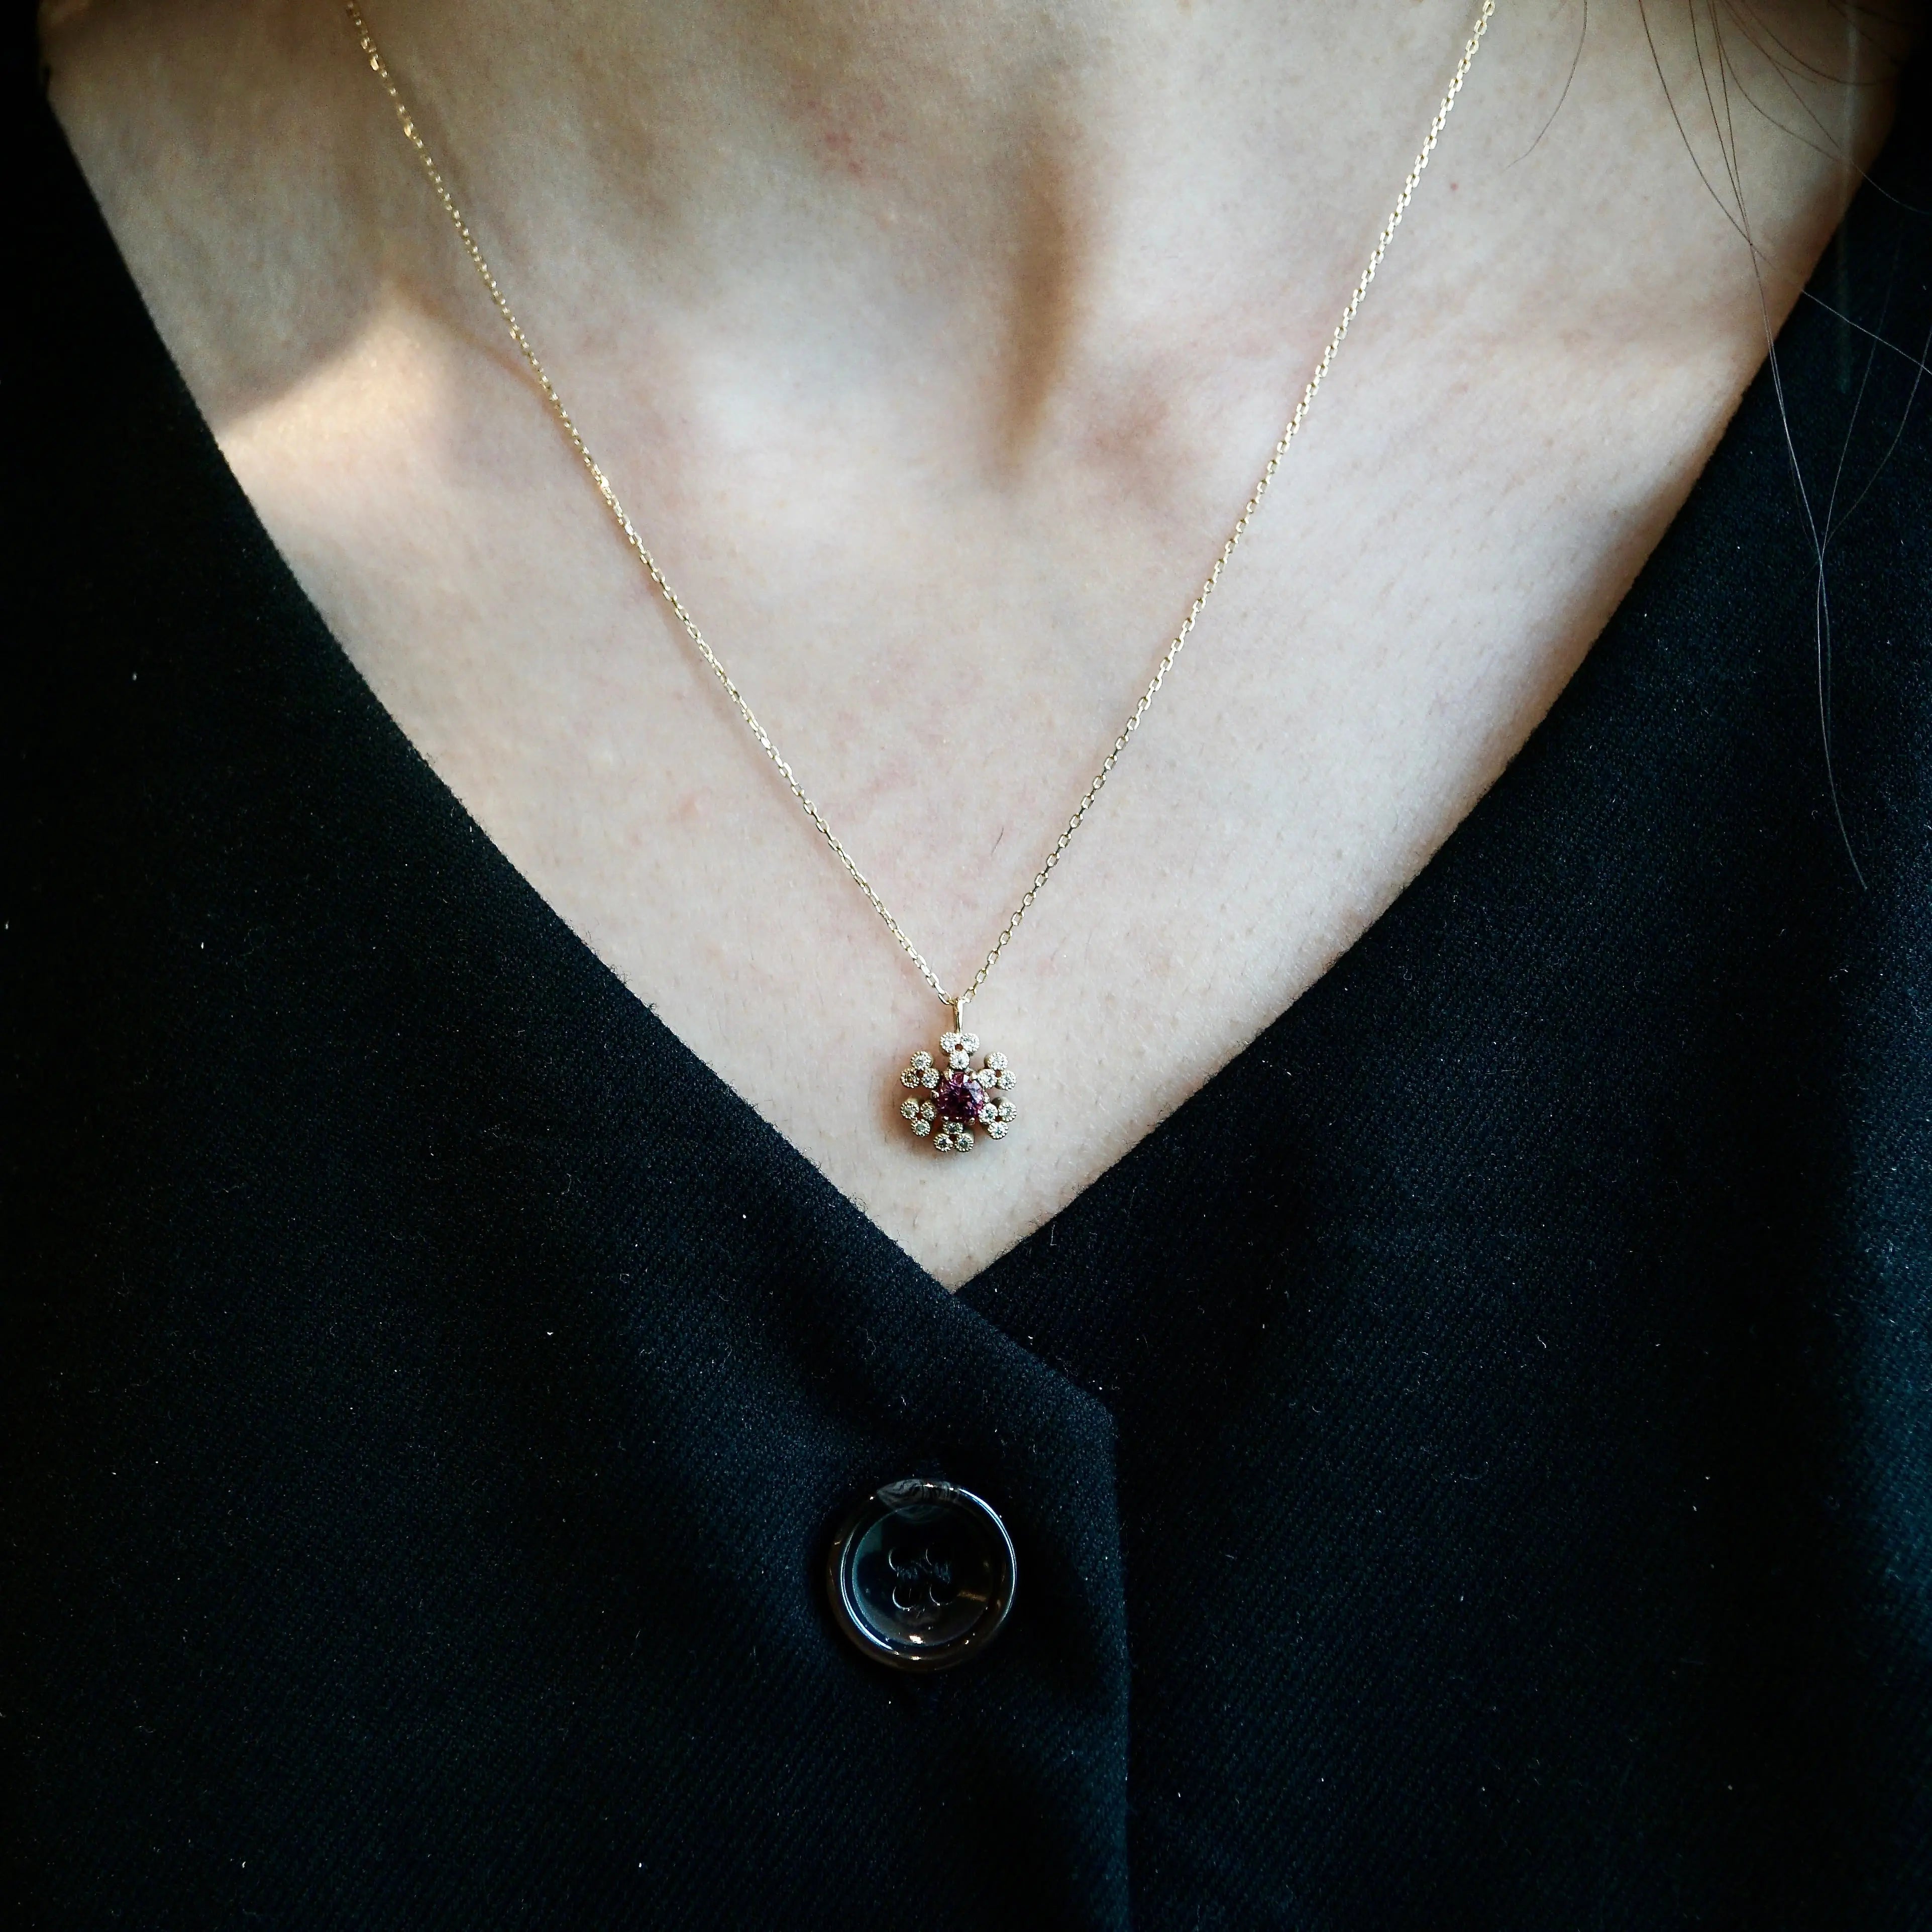 Necklace / Pendant